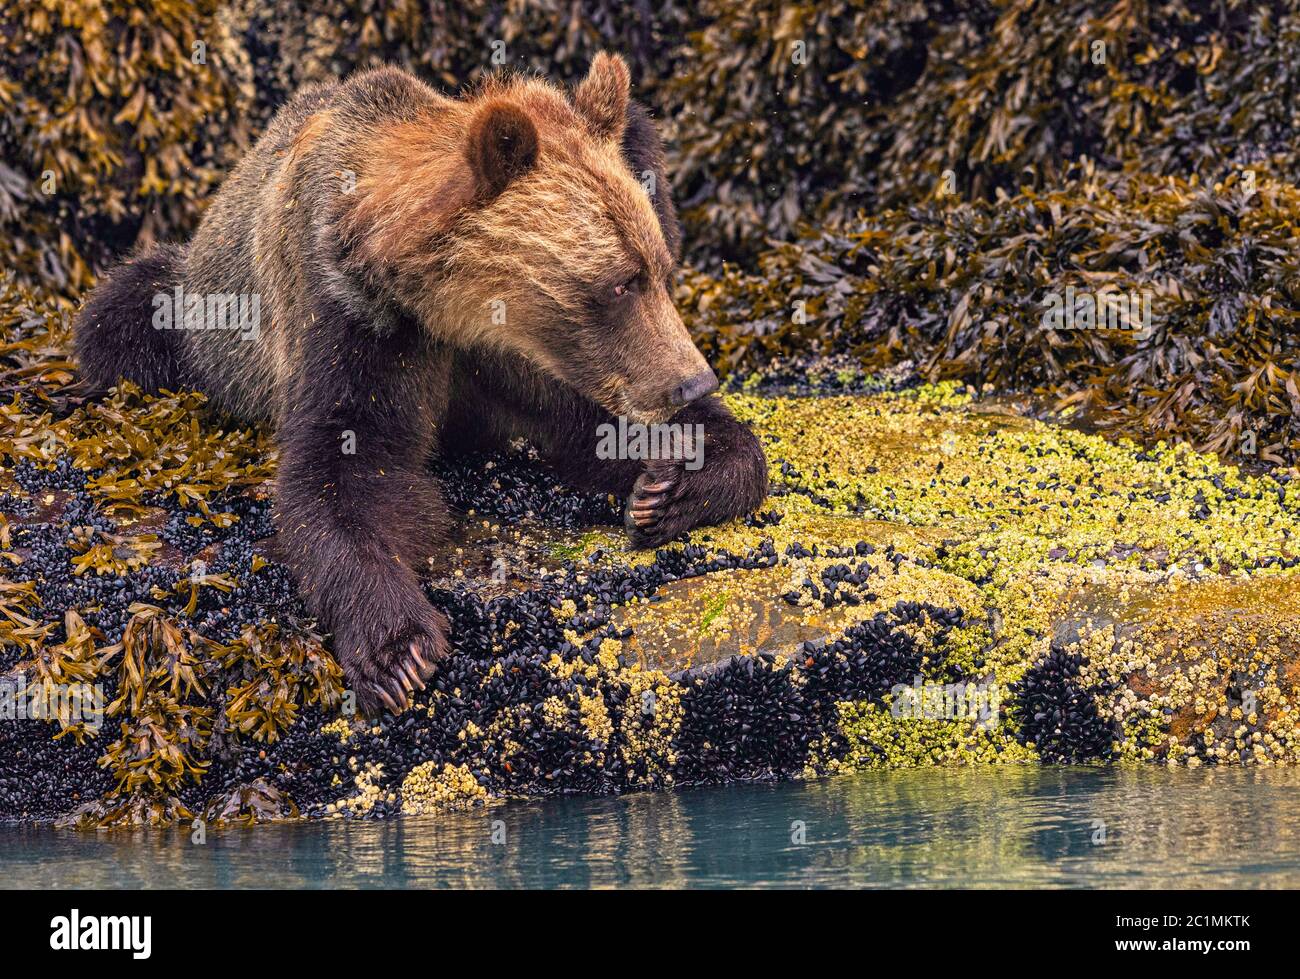 Oso grizzly costero descansando en mejillones durante la marea baja en Knight Inlet, Territorio de las primeras Naciones, Columbia Británica, Canadá. Foto de stock